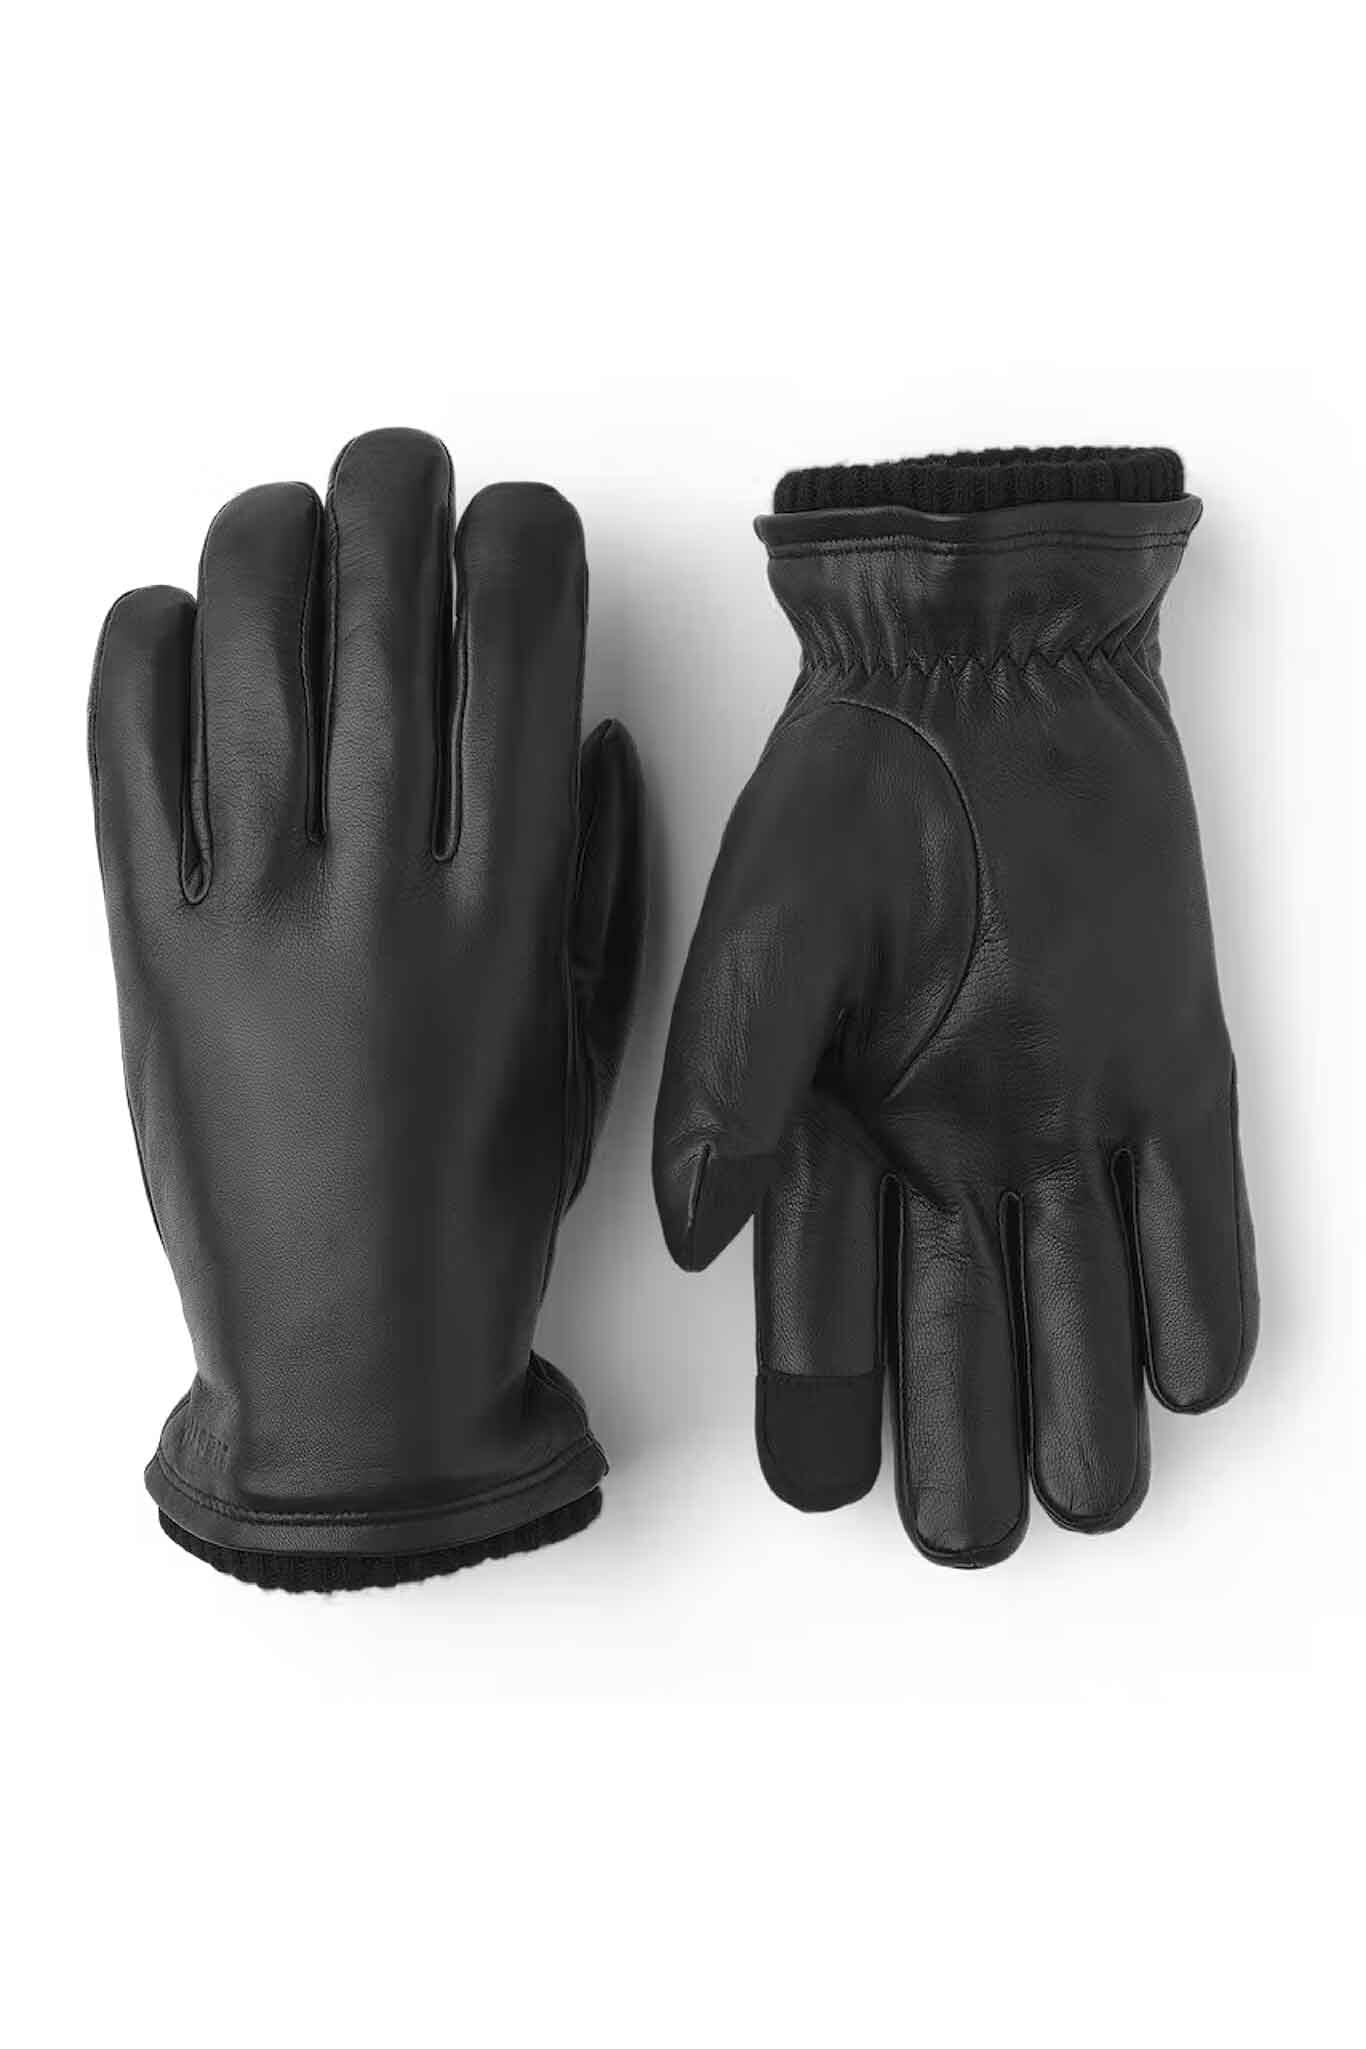 Hestra John Men's Leather Glove - Black